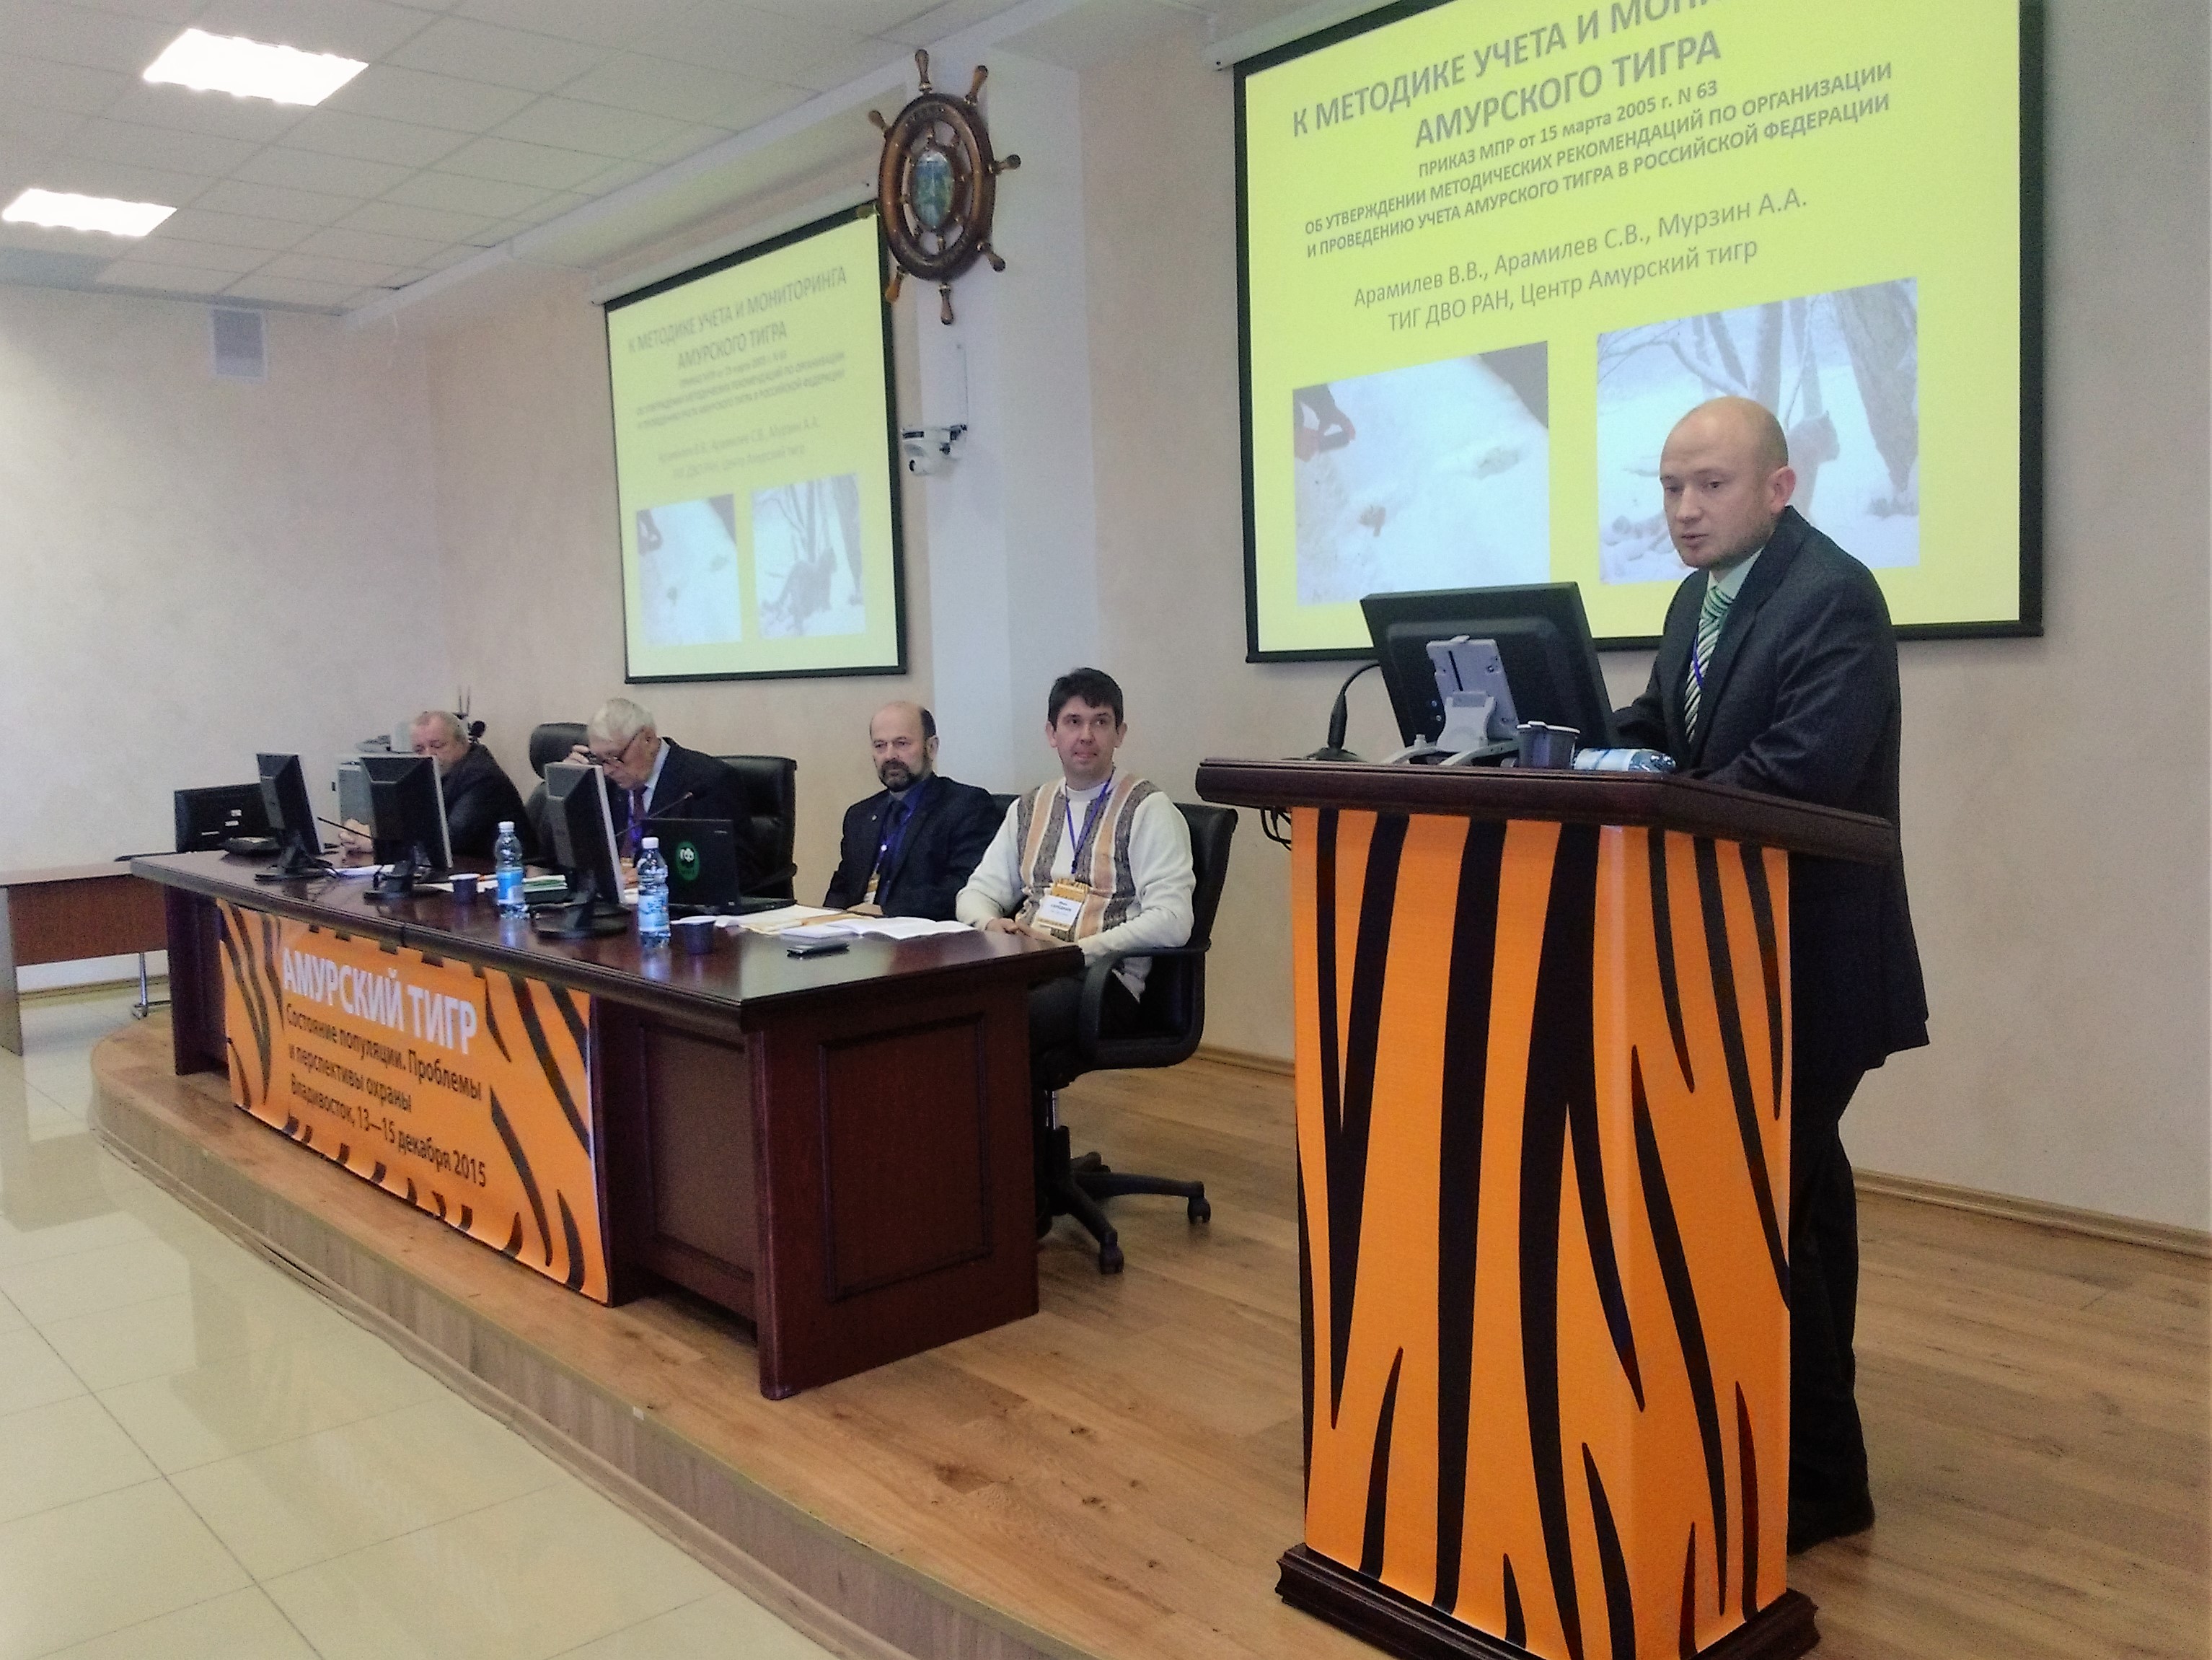 Откорректировать методику учета амурского тигра предлагают участники конференции во Владивостоке